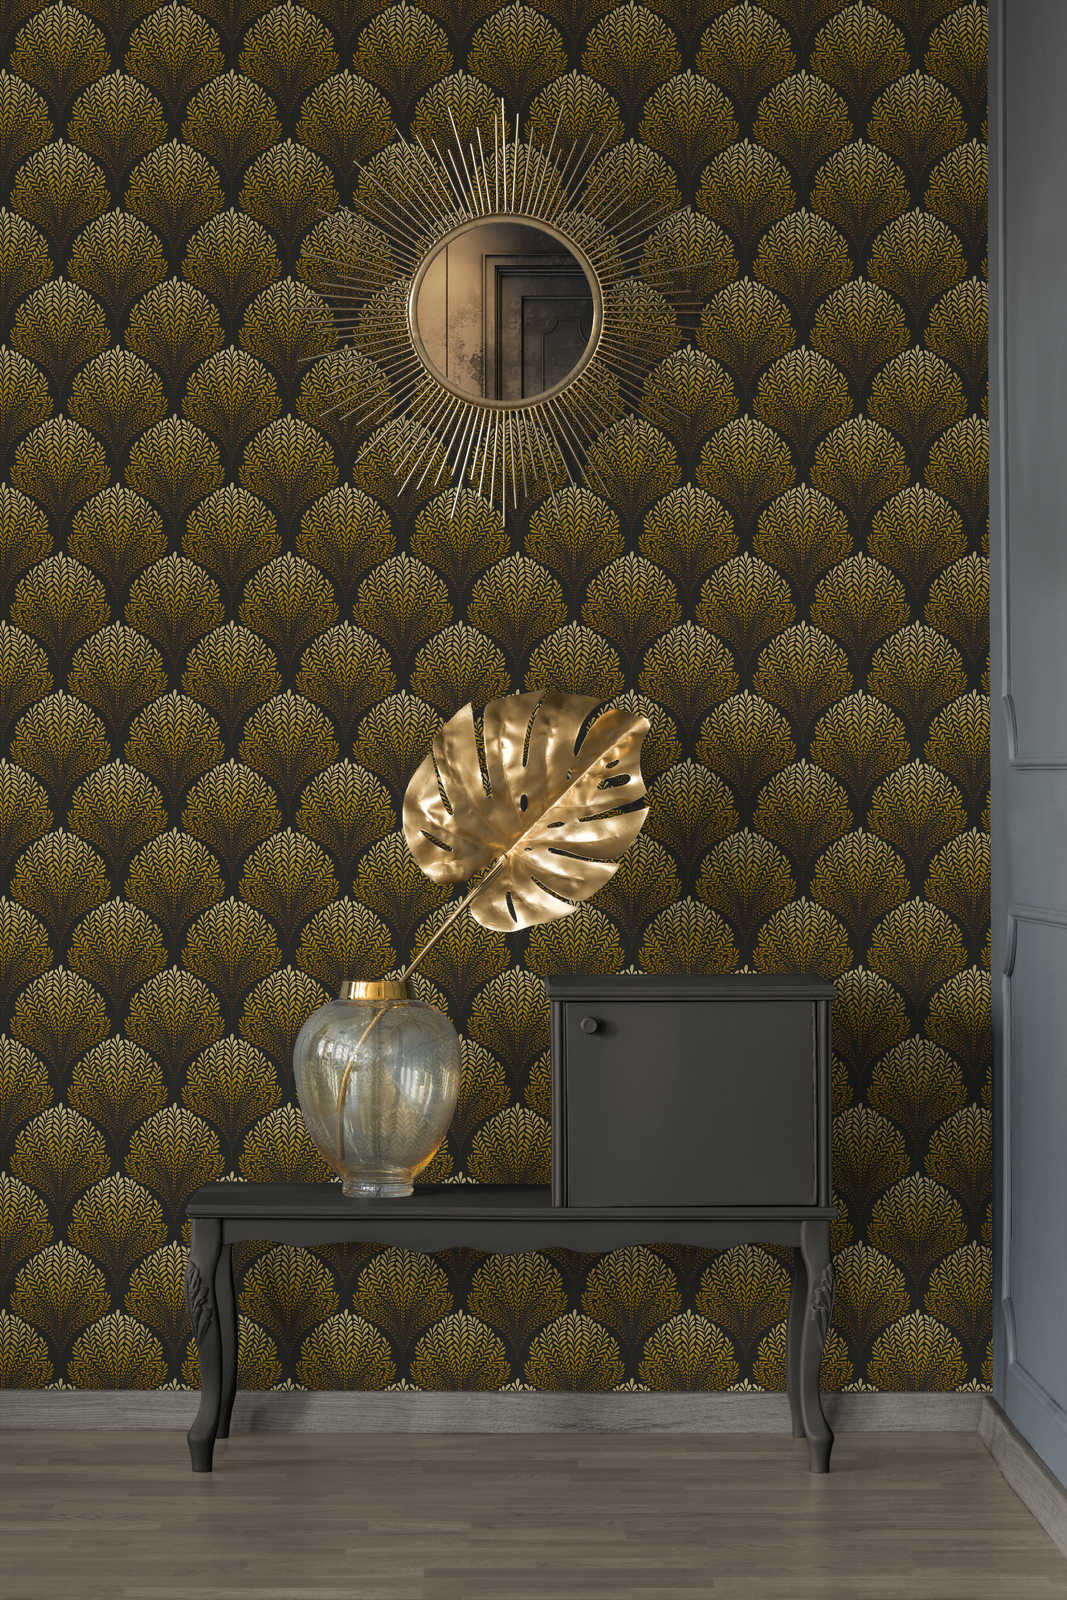             Retro behang met gouden ornamenten - bruin, geel, zwart
        